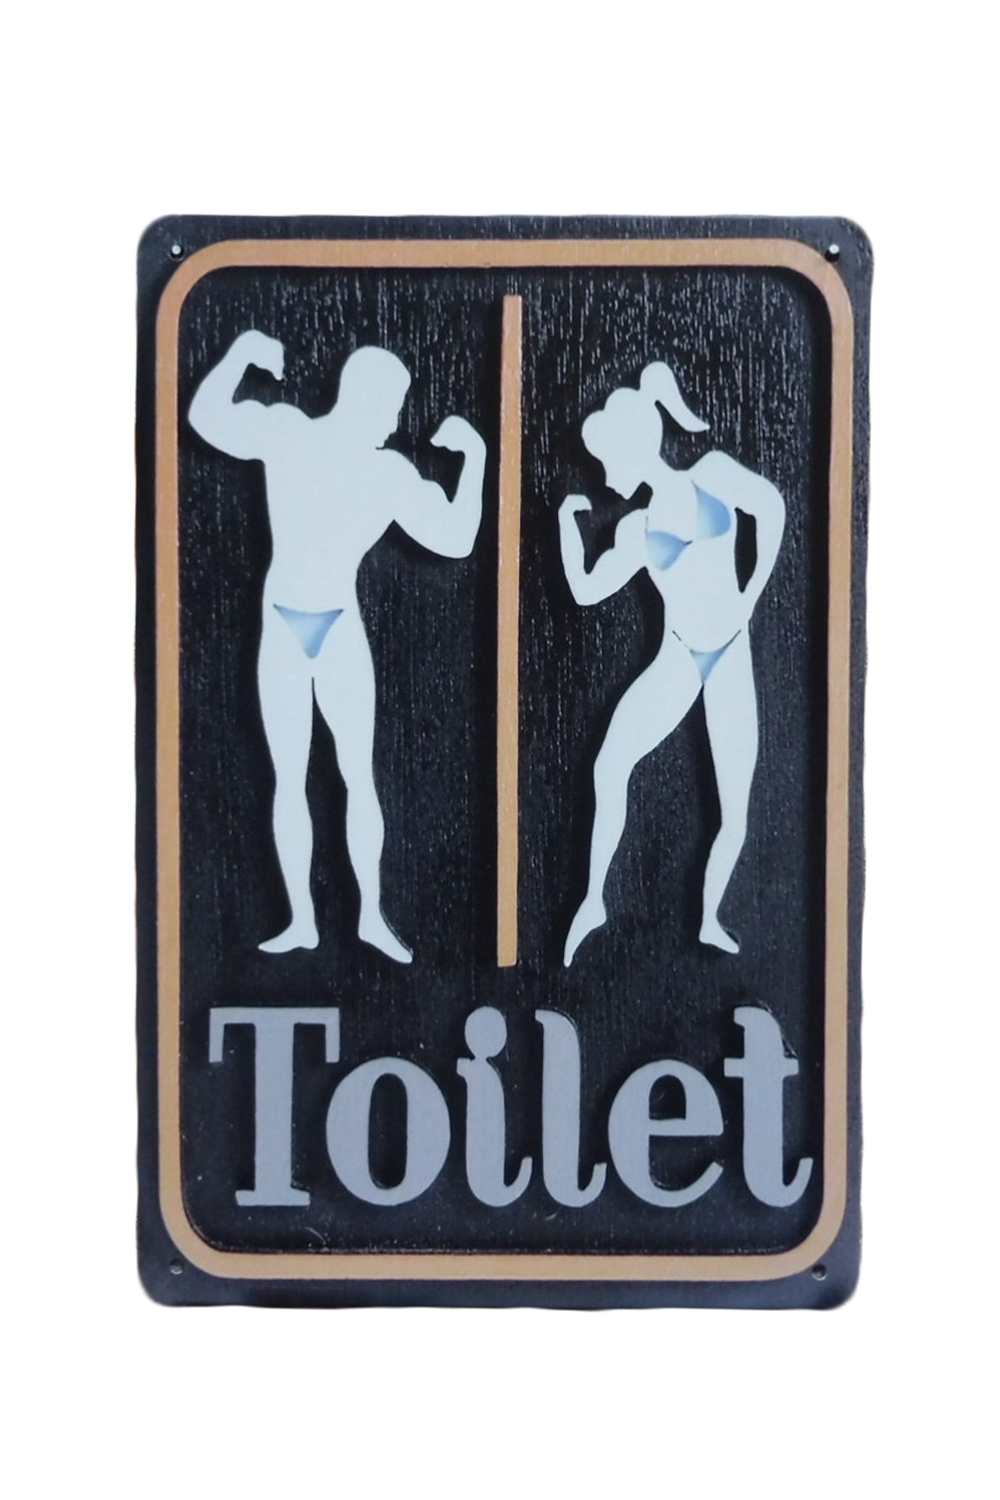 Toilet Sportschool – Metalen borden